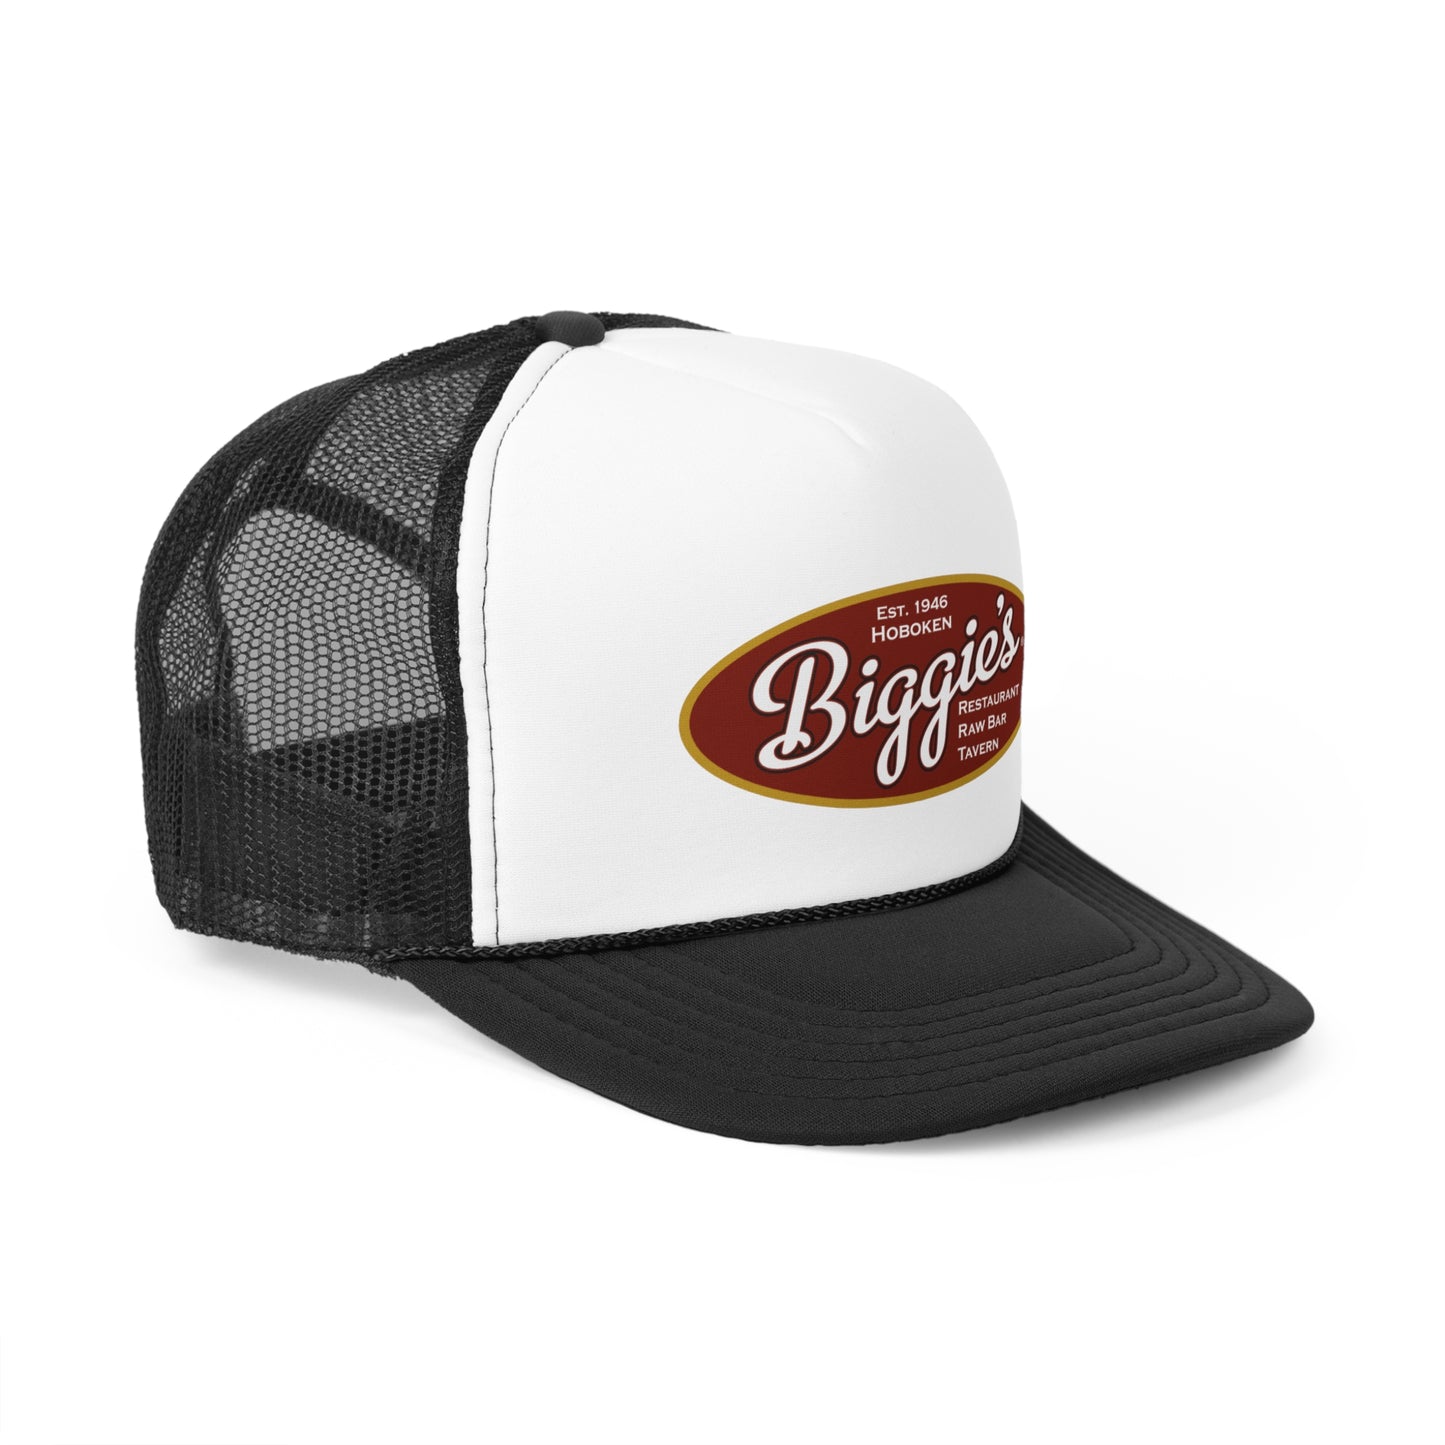 Biggie's Clam Bar Hoboken Trucker Hats